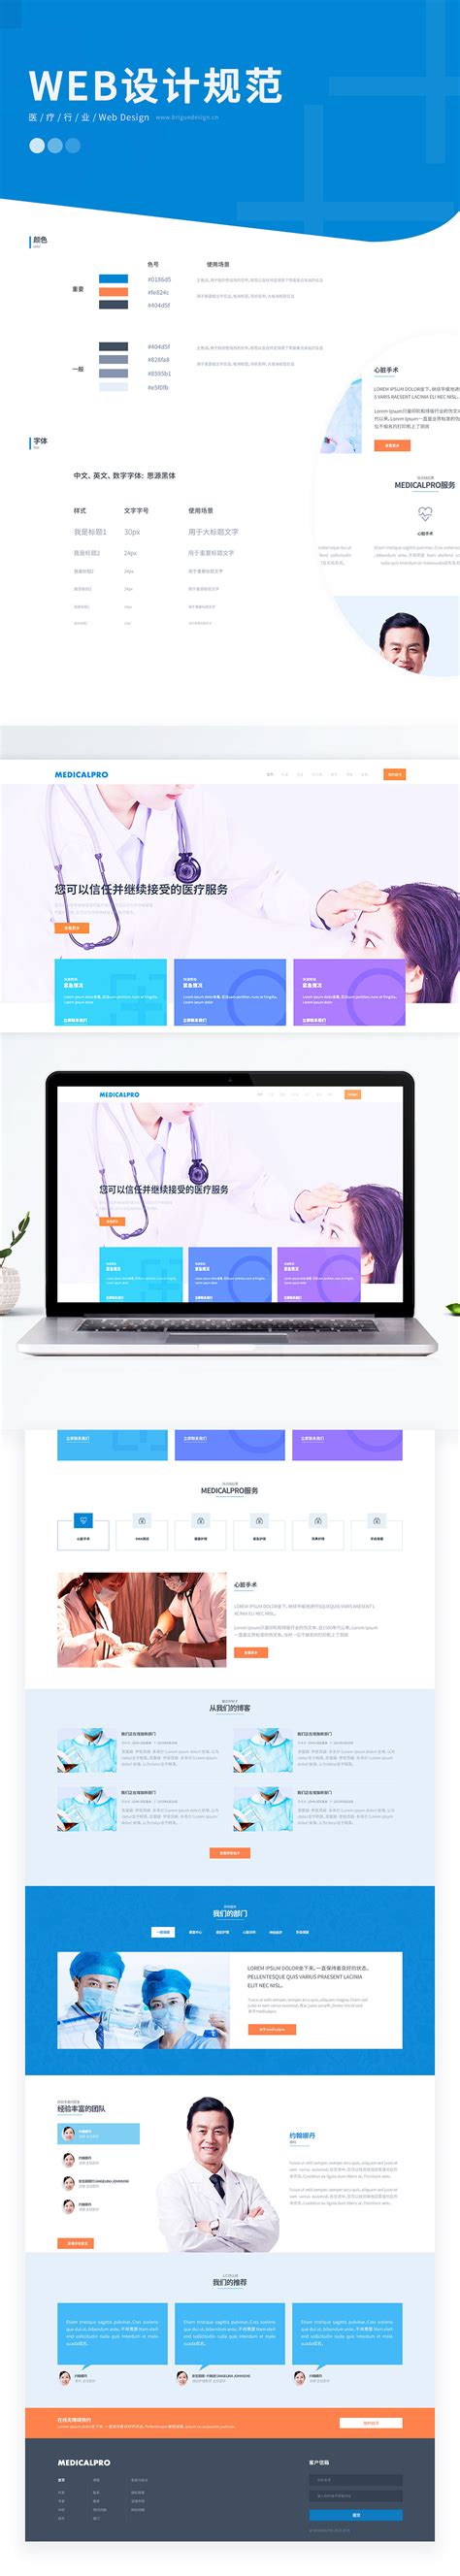 医药行业网站设计方案